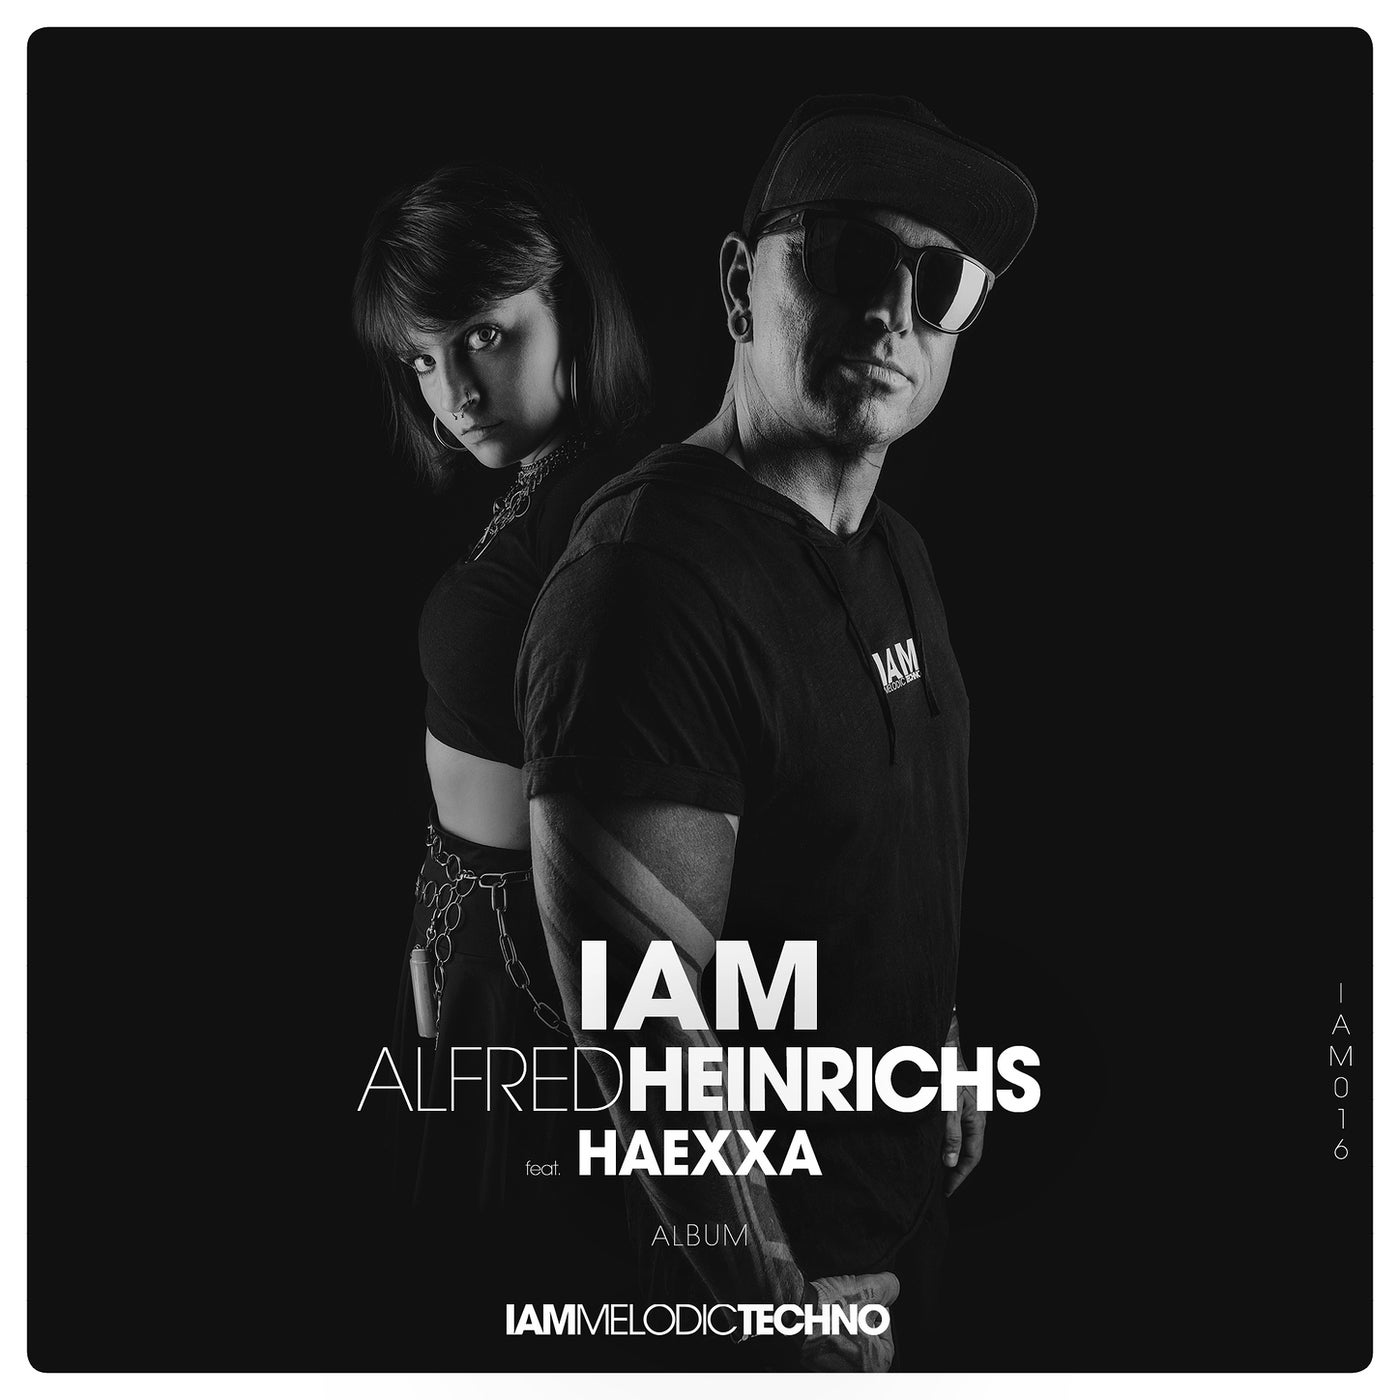 IAM ALFRED HEINRICHS feat. Haexxa